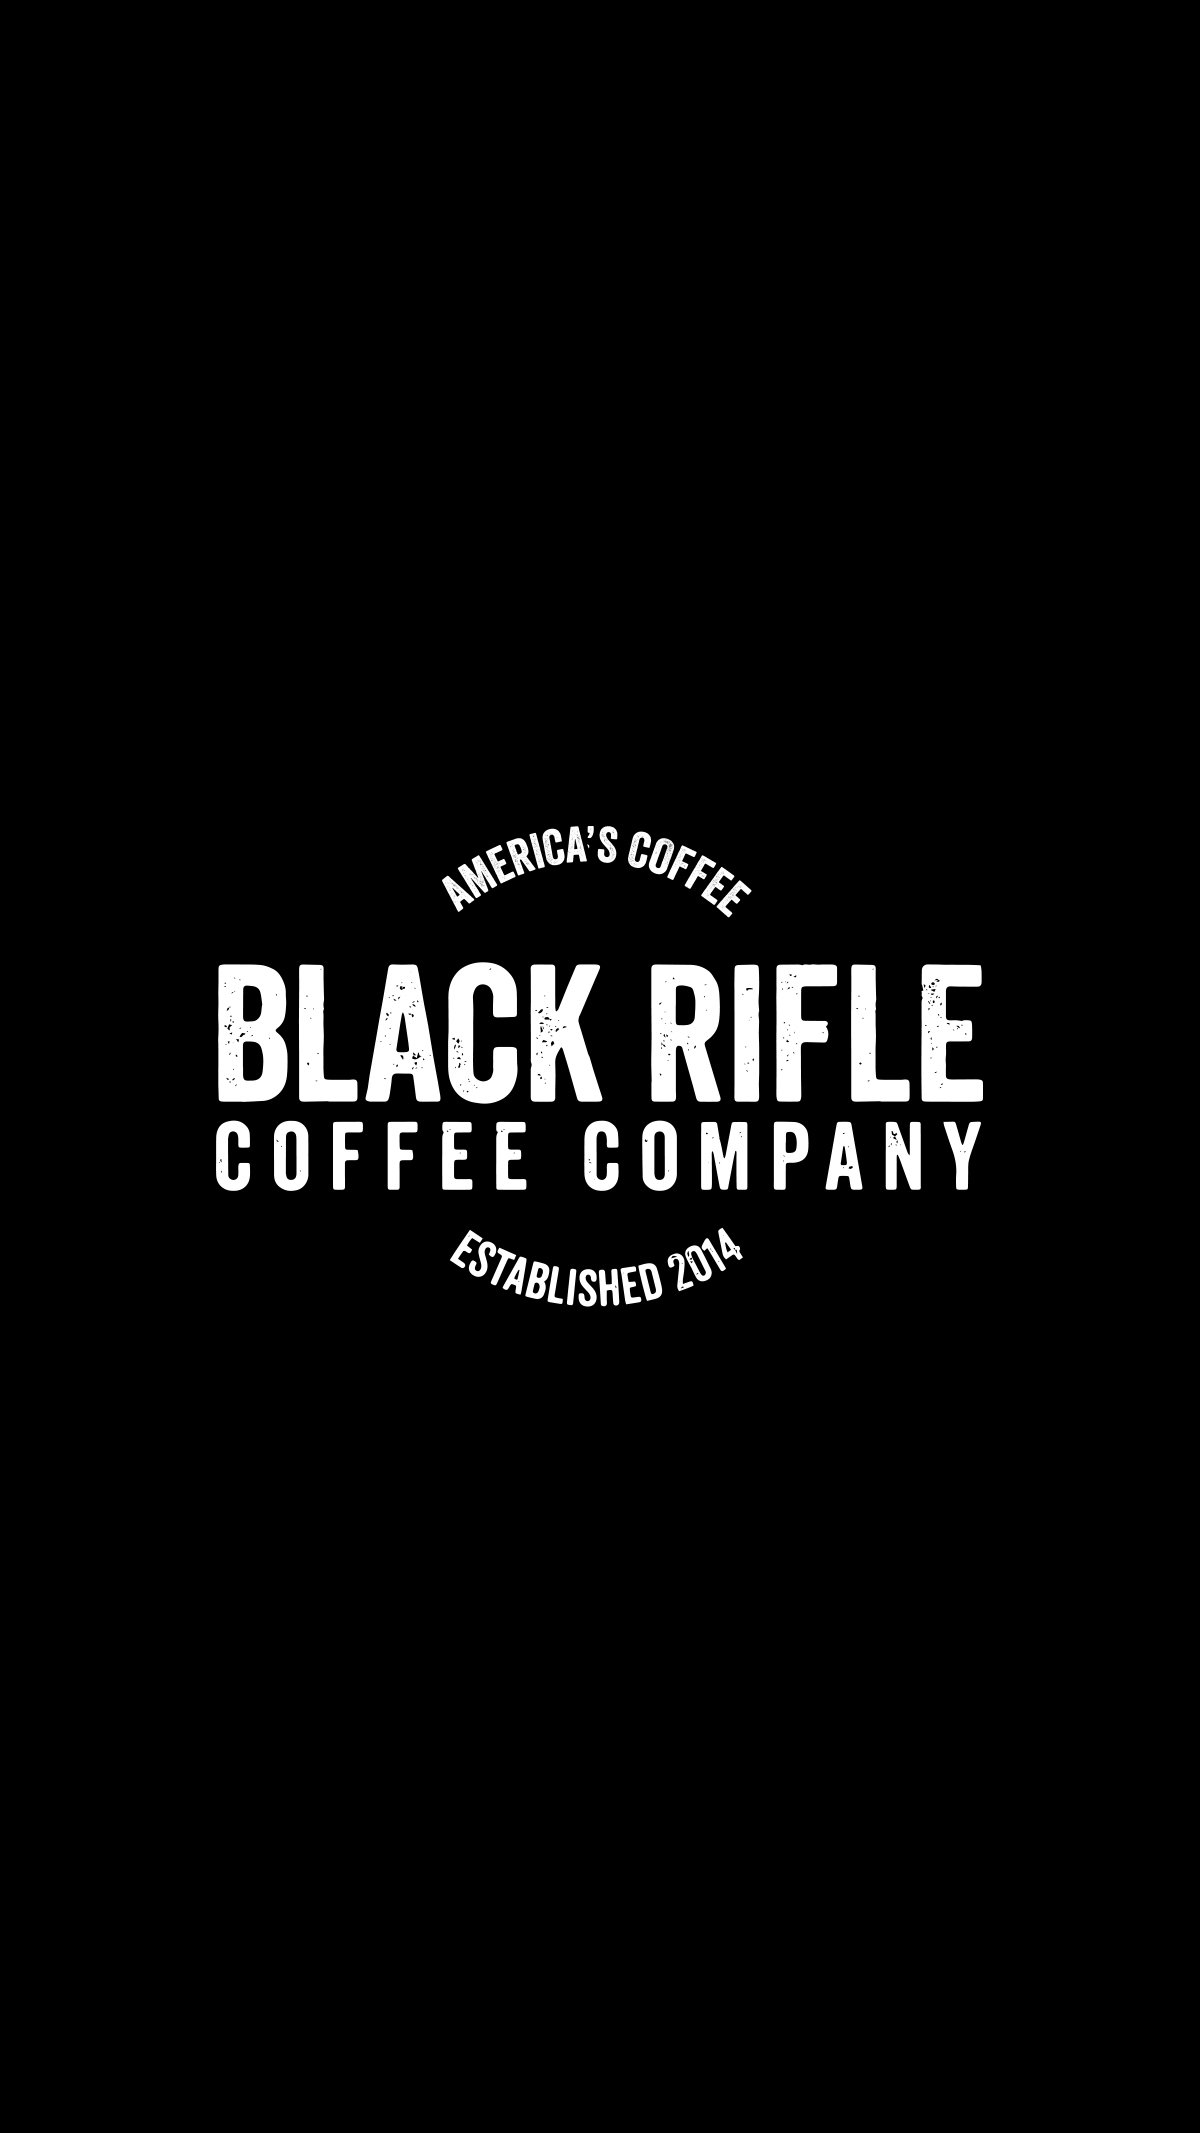 زمینه Black Rifle Coffee Company با تم سیاه سفید